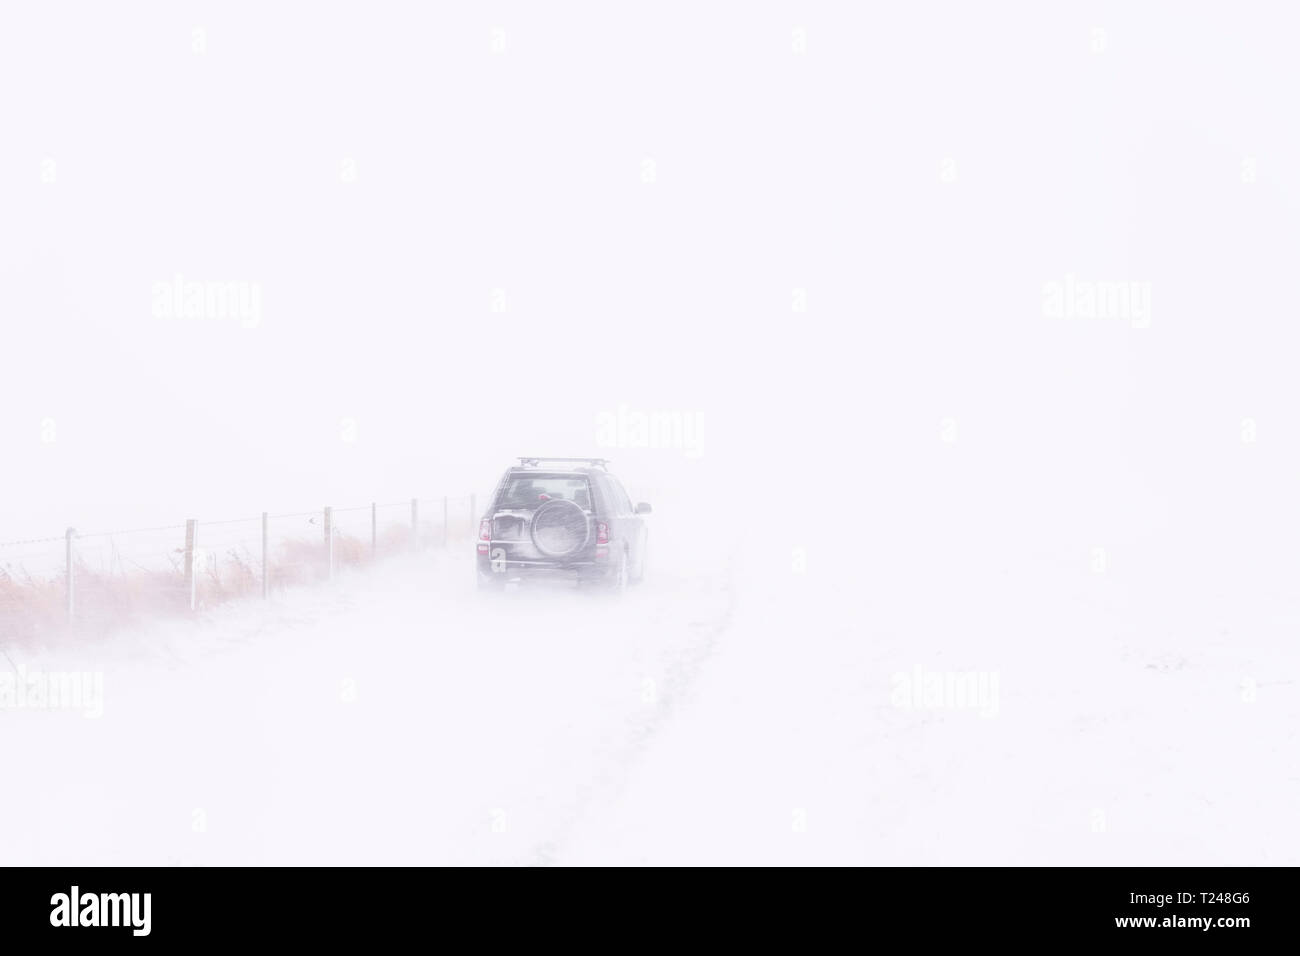 Royaume-uni, Ecosse, East Lothian, North Berwick, neige, hors route véhicule lors d'une tempête d'hiver Banque D'Images